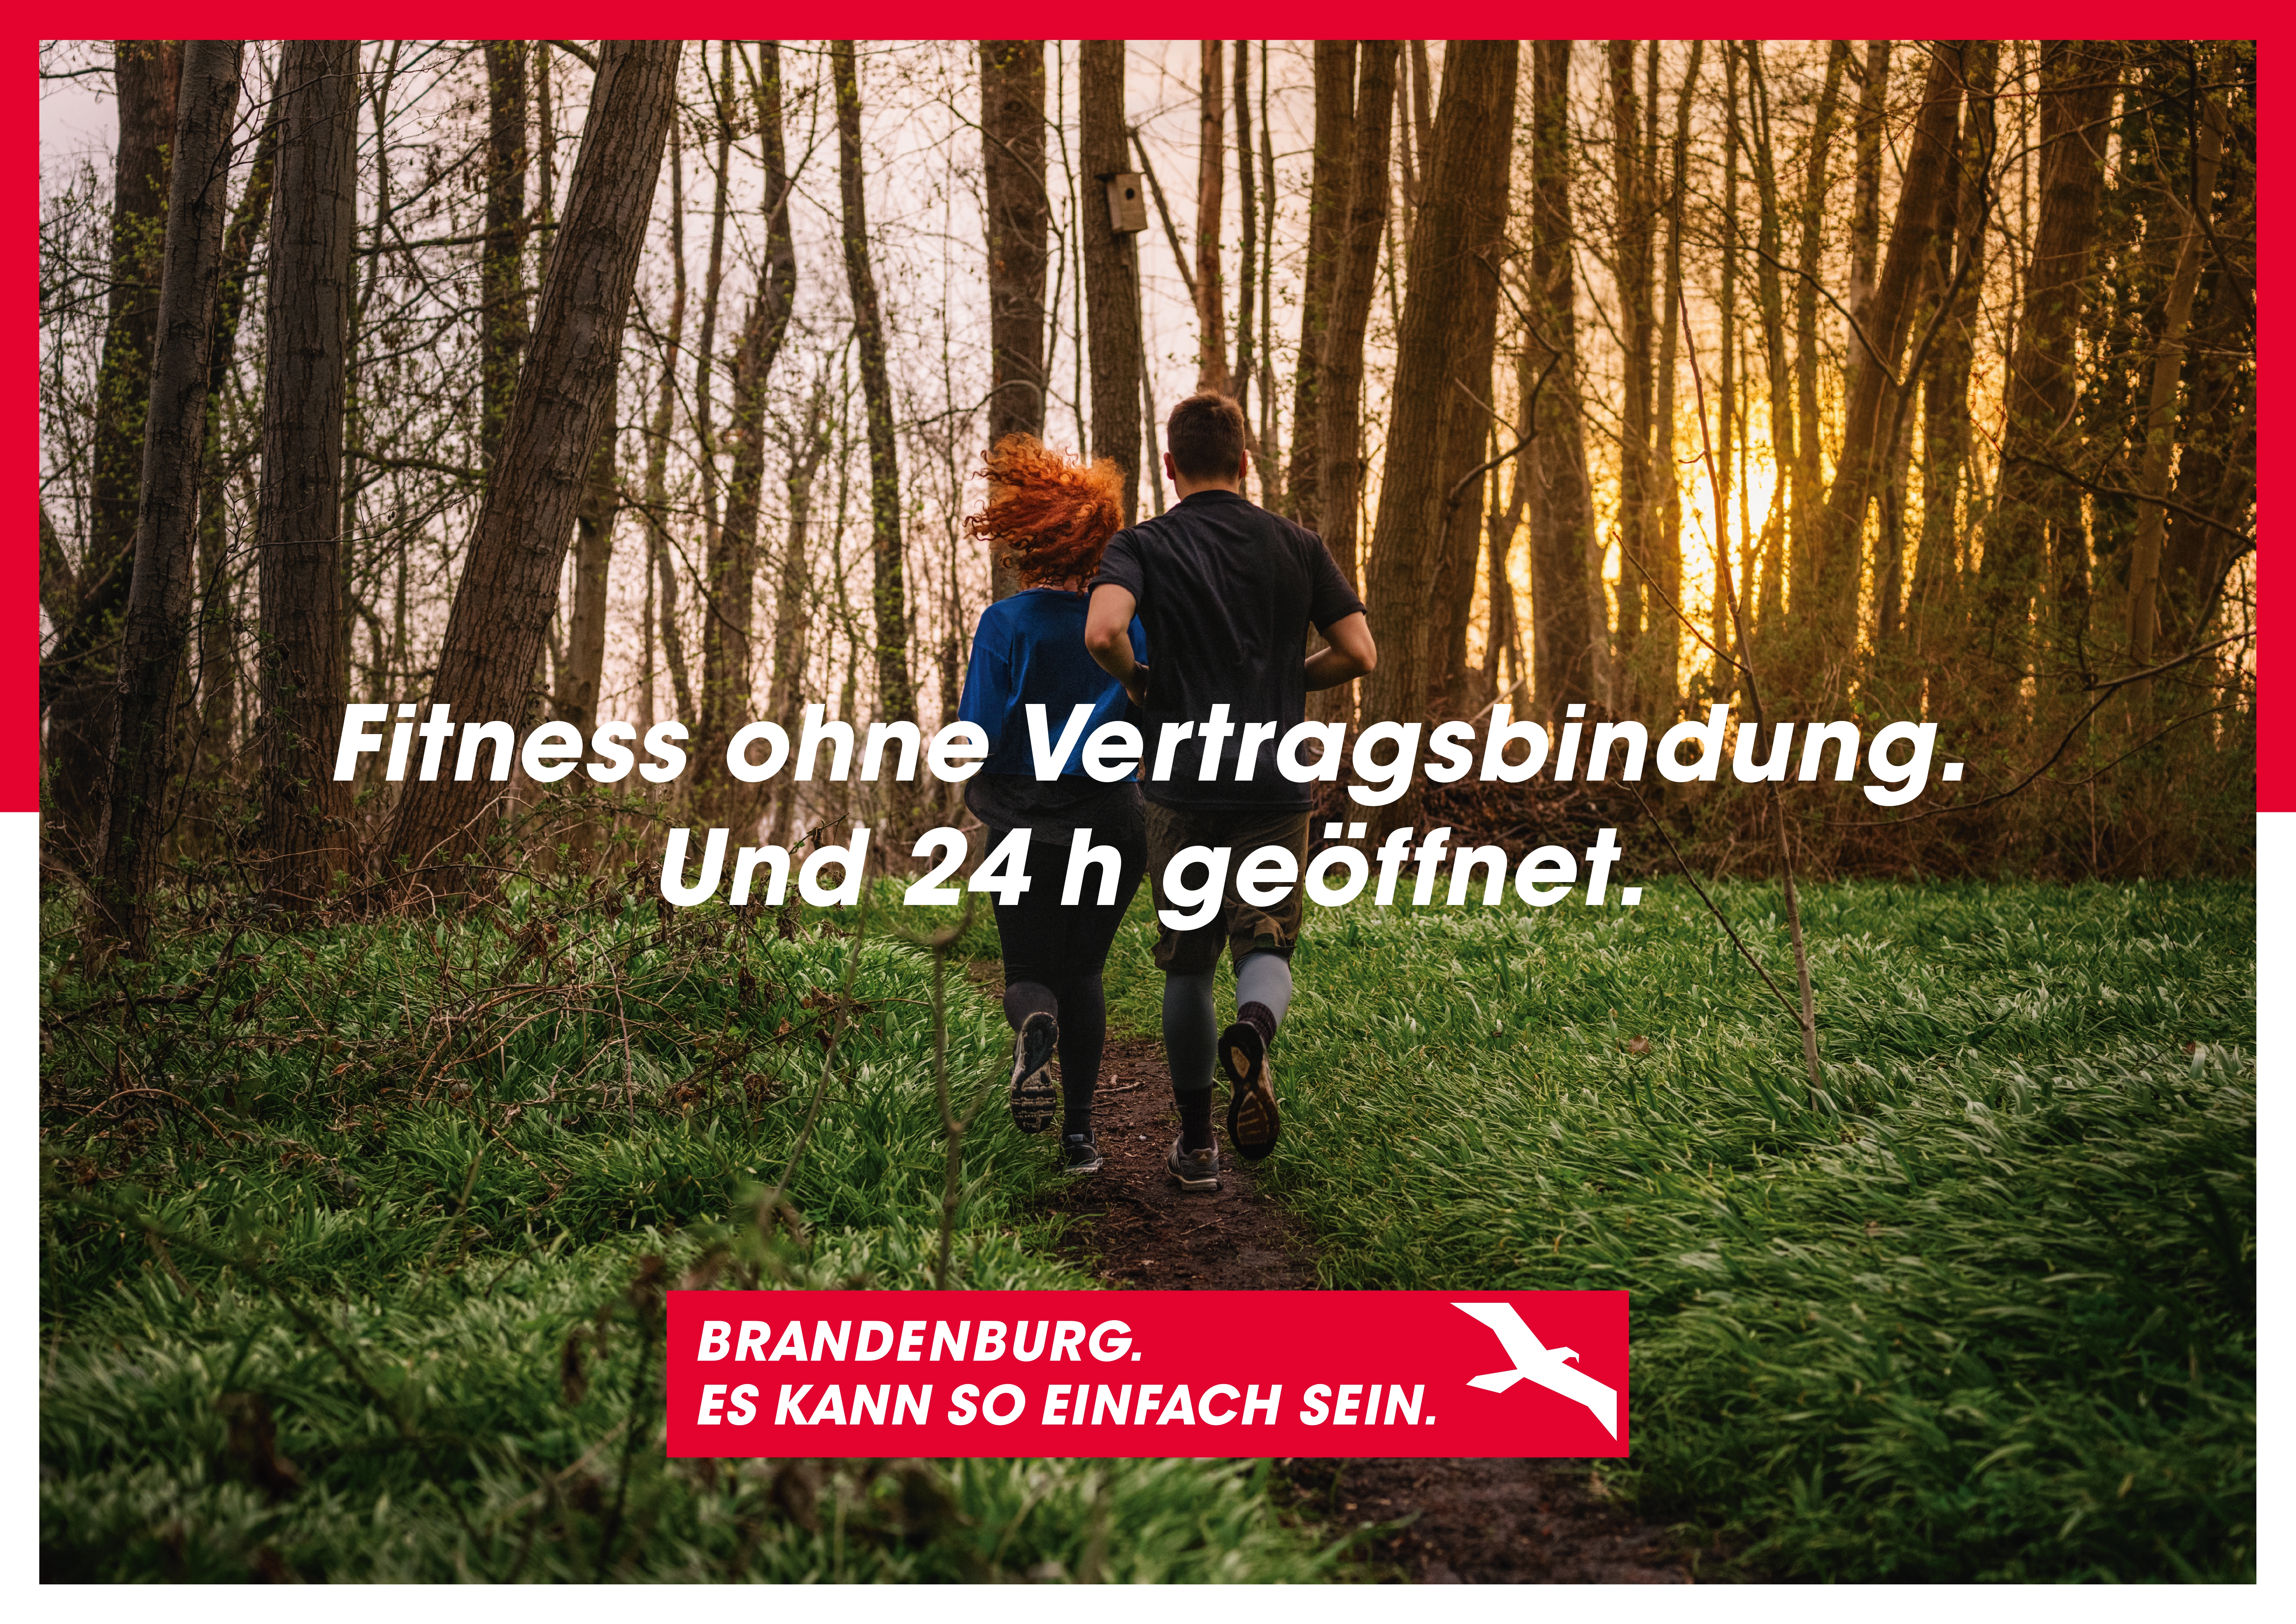 Zwei joggende Menschen im Wald. Darauf der Schriftzug "Fitness ohne Vertragsbindung. Und 24h geöffnet". Am unteren Bildrand das Kampagnenlogo mit dem Schriftzug "Brandenburg. Es kann so einfach sein."